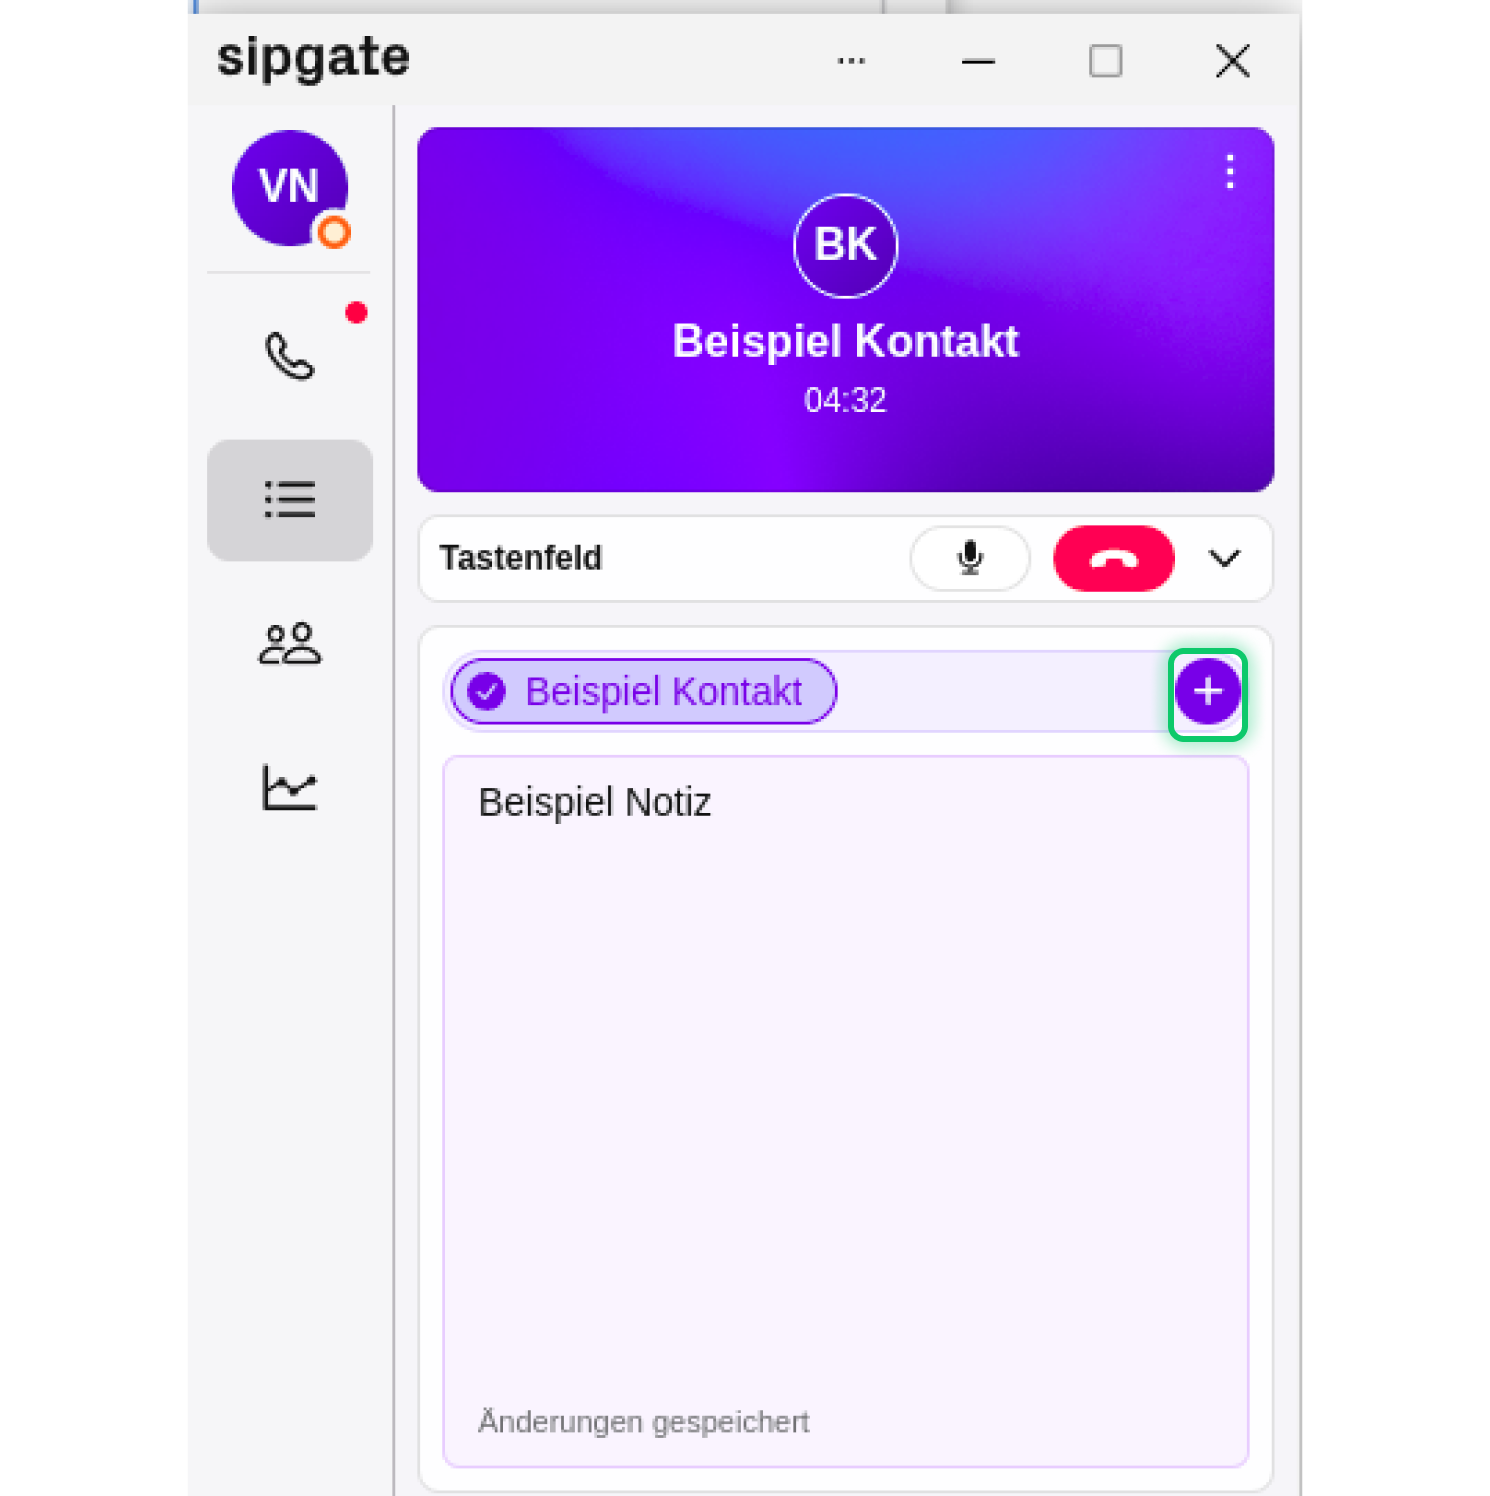 sipgateApp-Pipedrive2.png